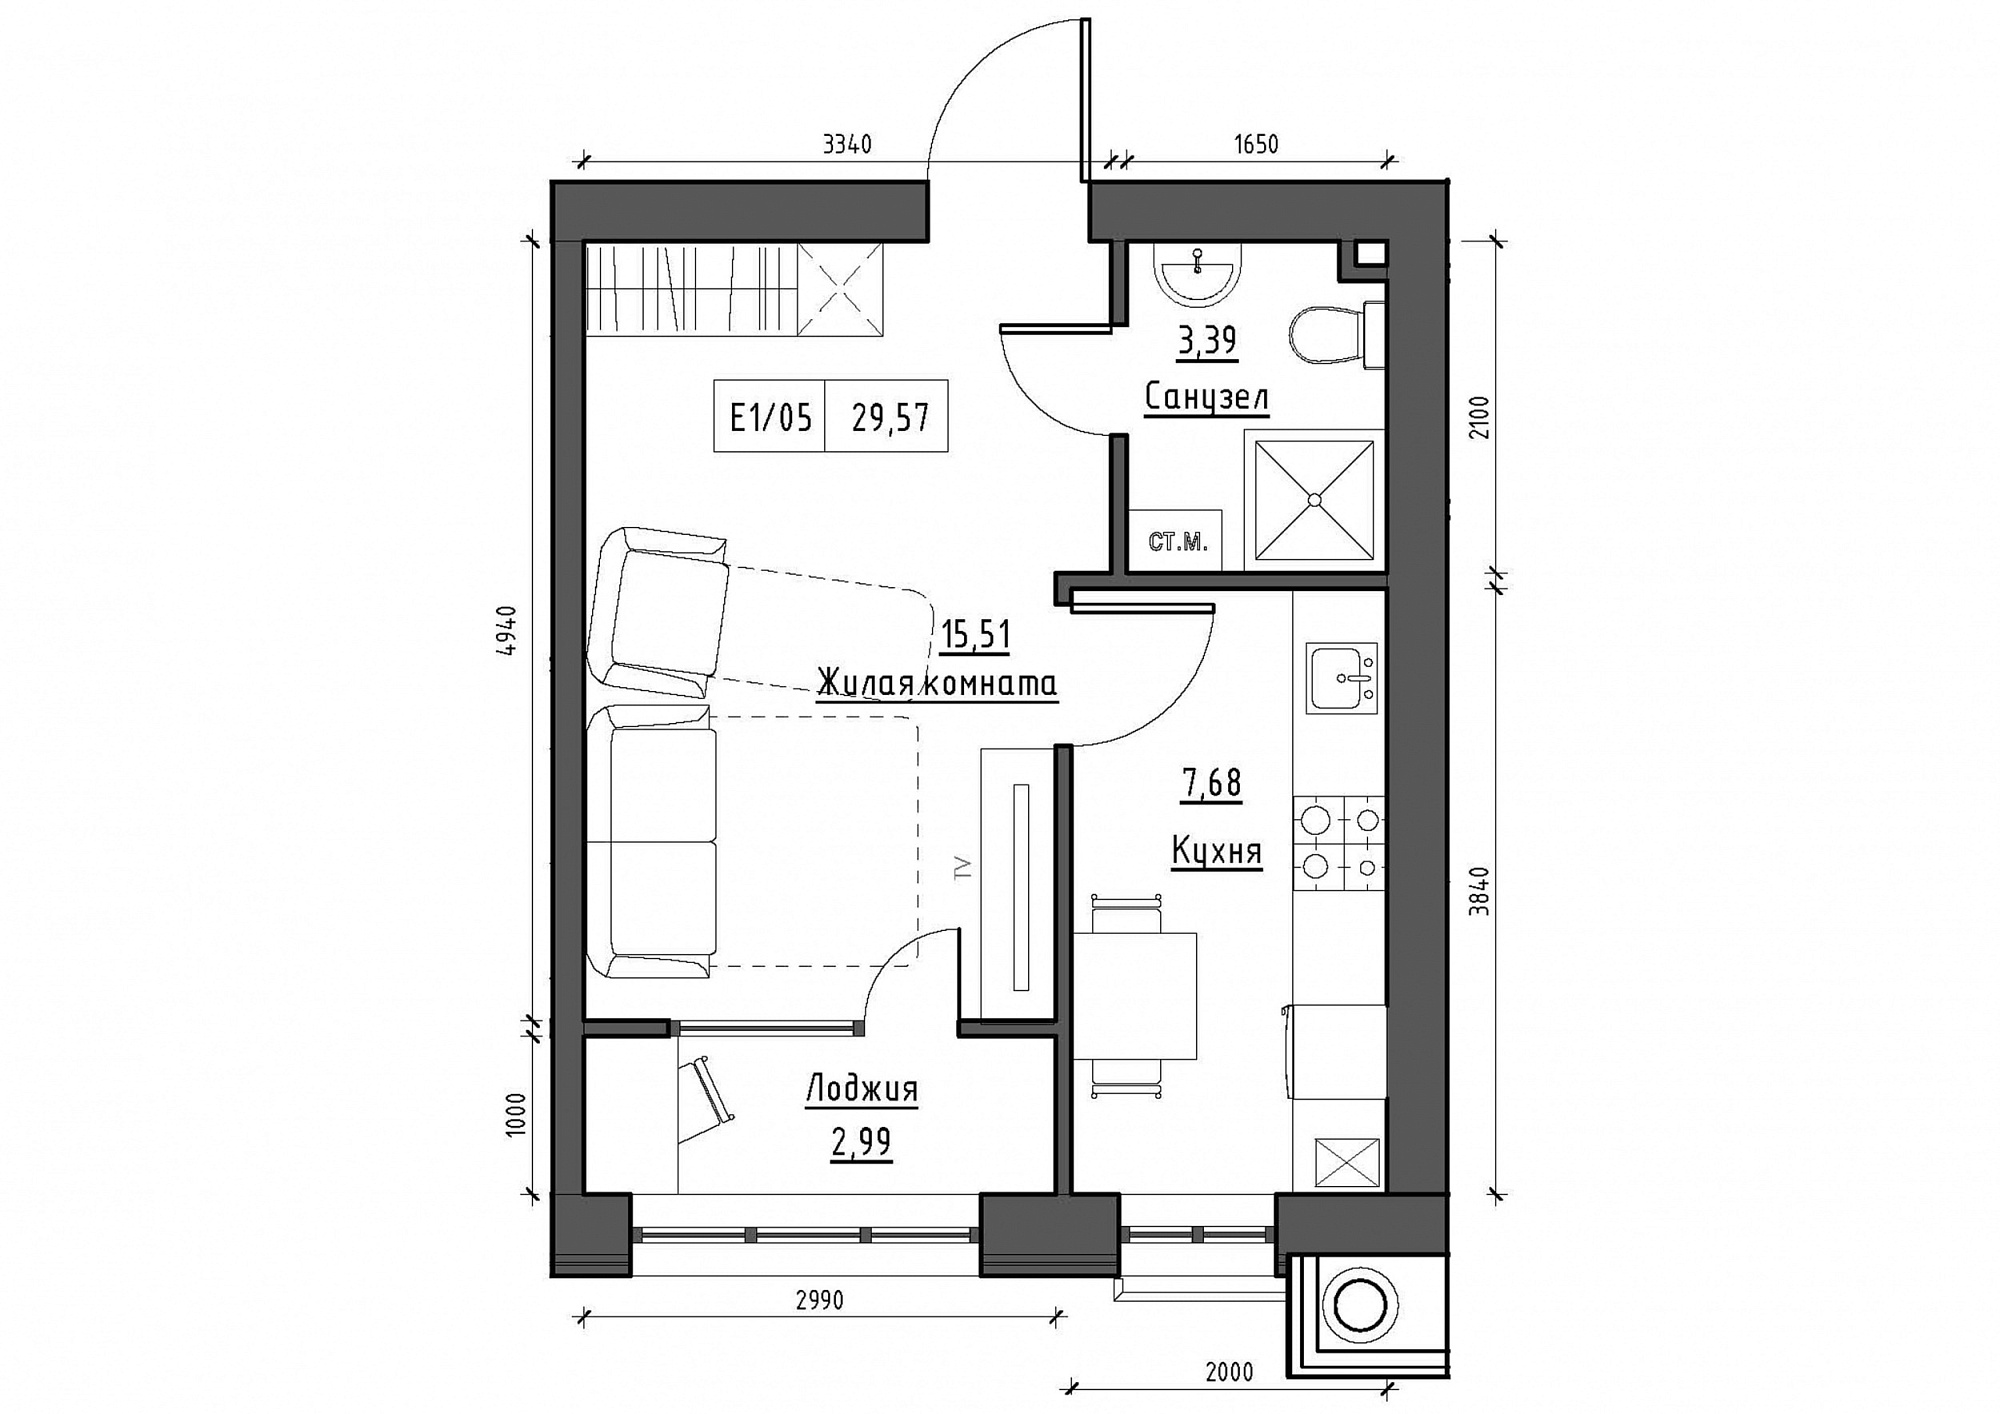 Планировка 1-к квартира площей 29.57м2, KS-012-04/0006.